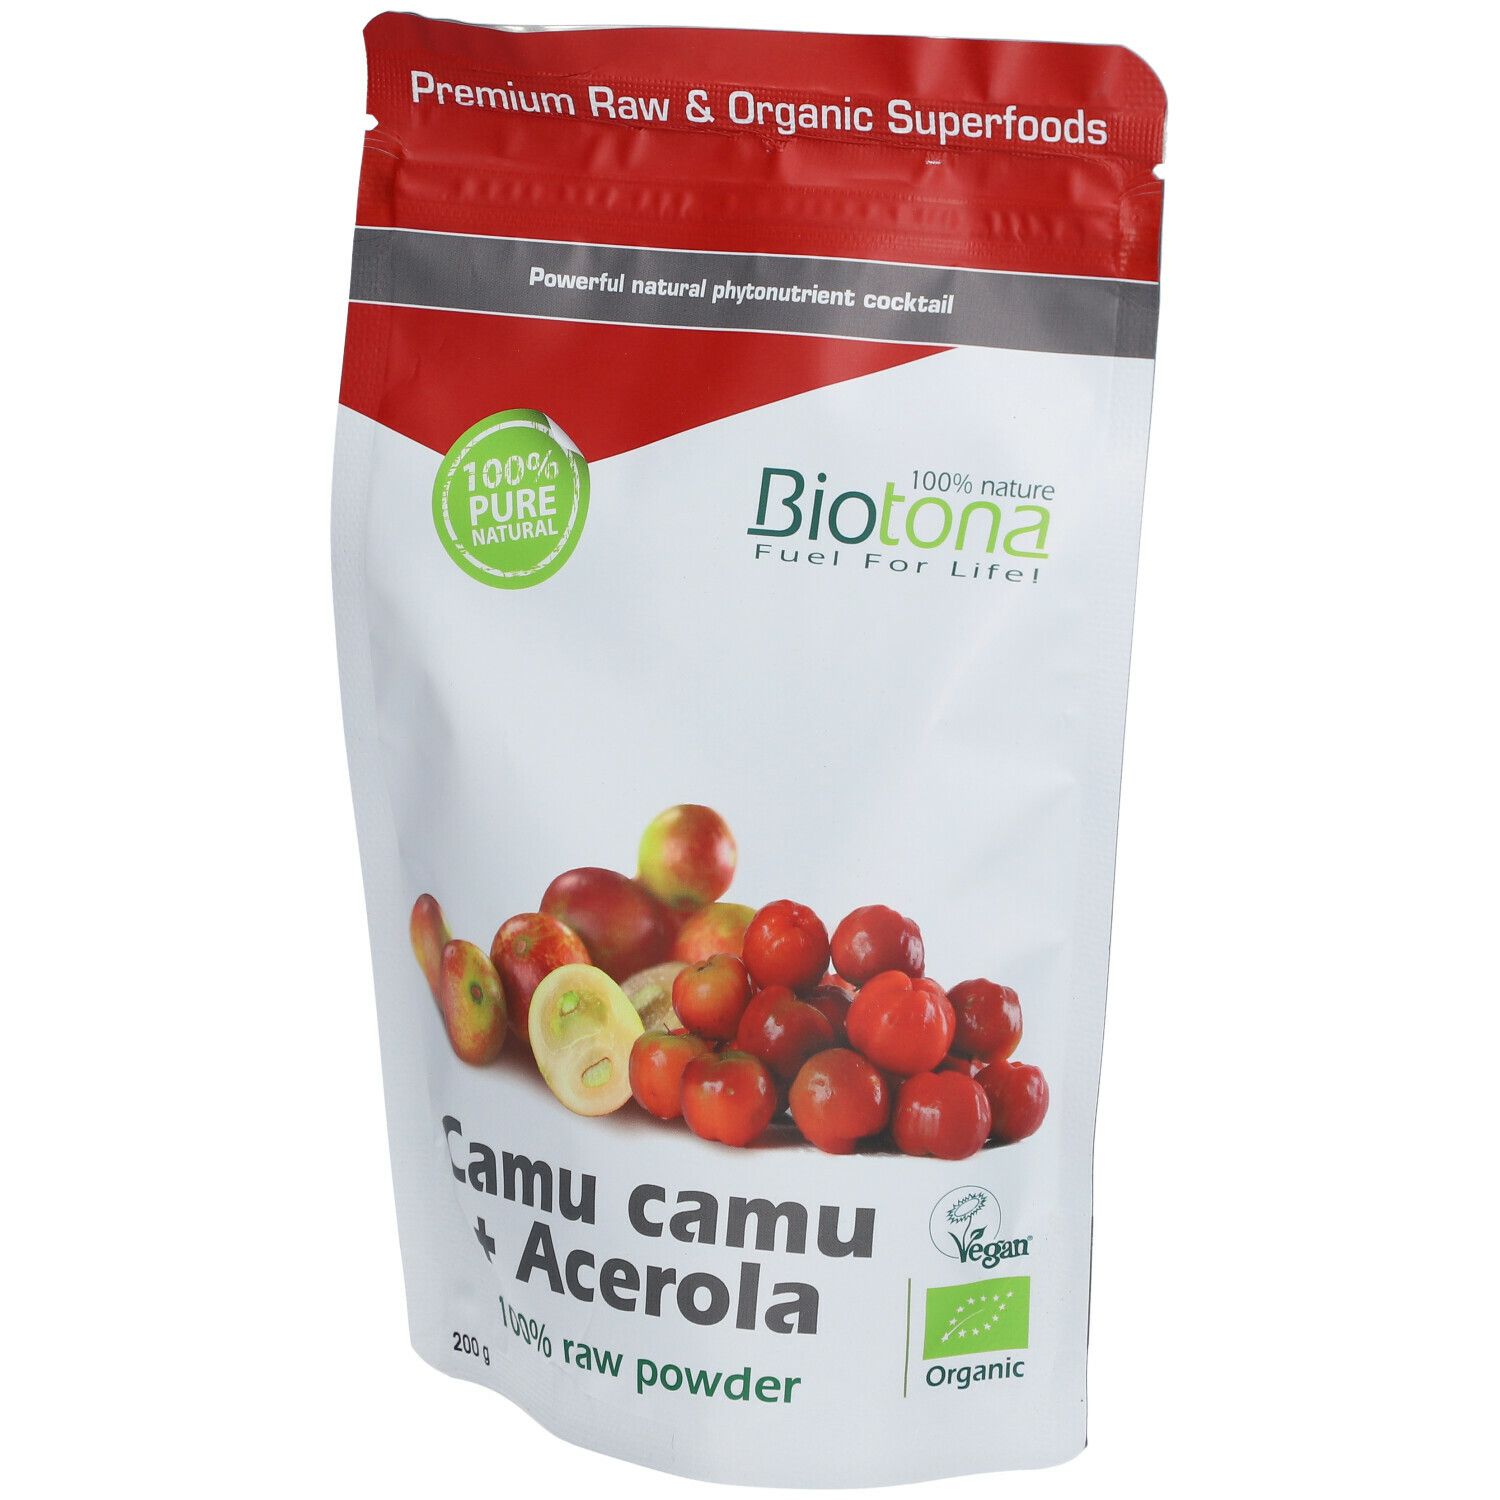 Biotona Camu Camu + Acerola Bio